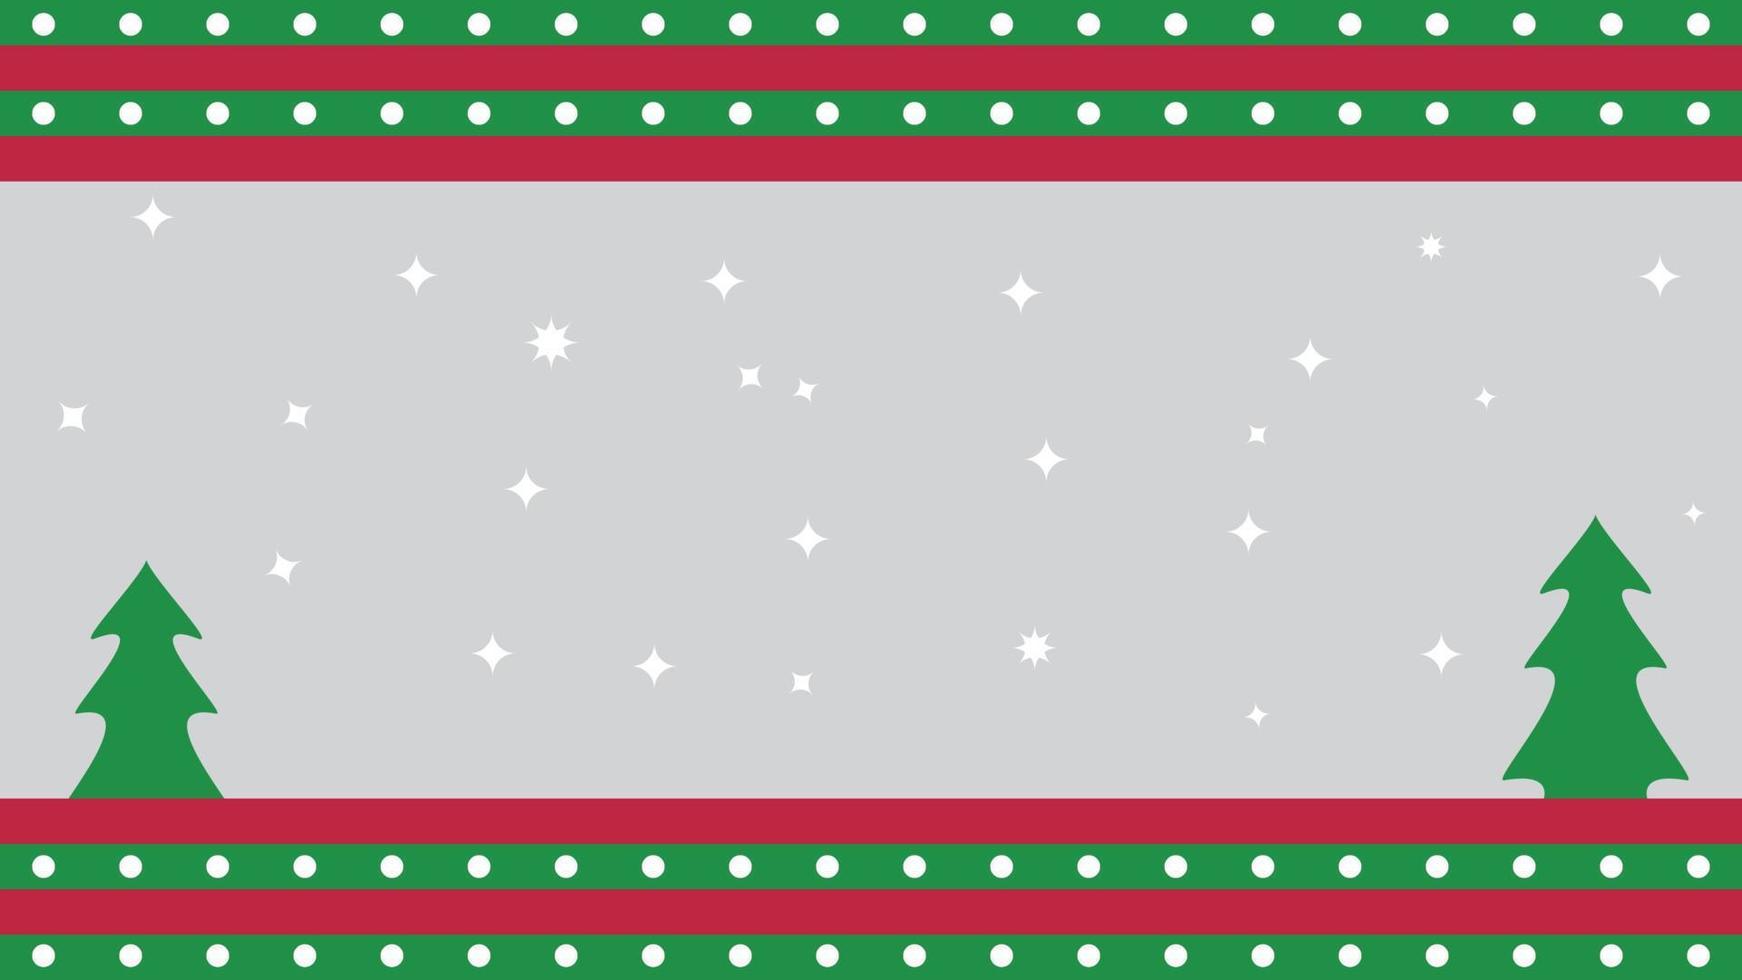 roter und grüner weihnachtsfahnenhintergrund mit bäumen und zufälligen sternen vektor